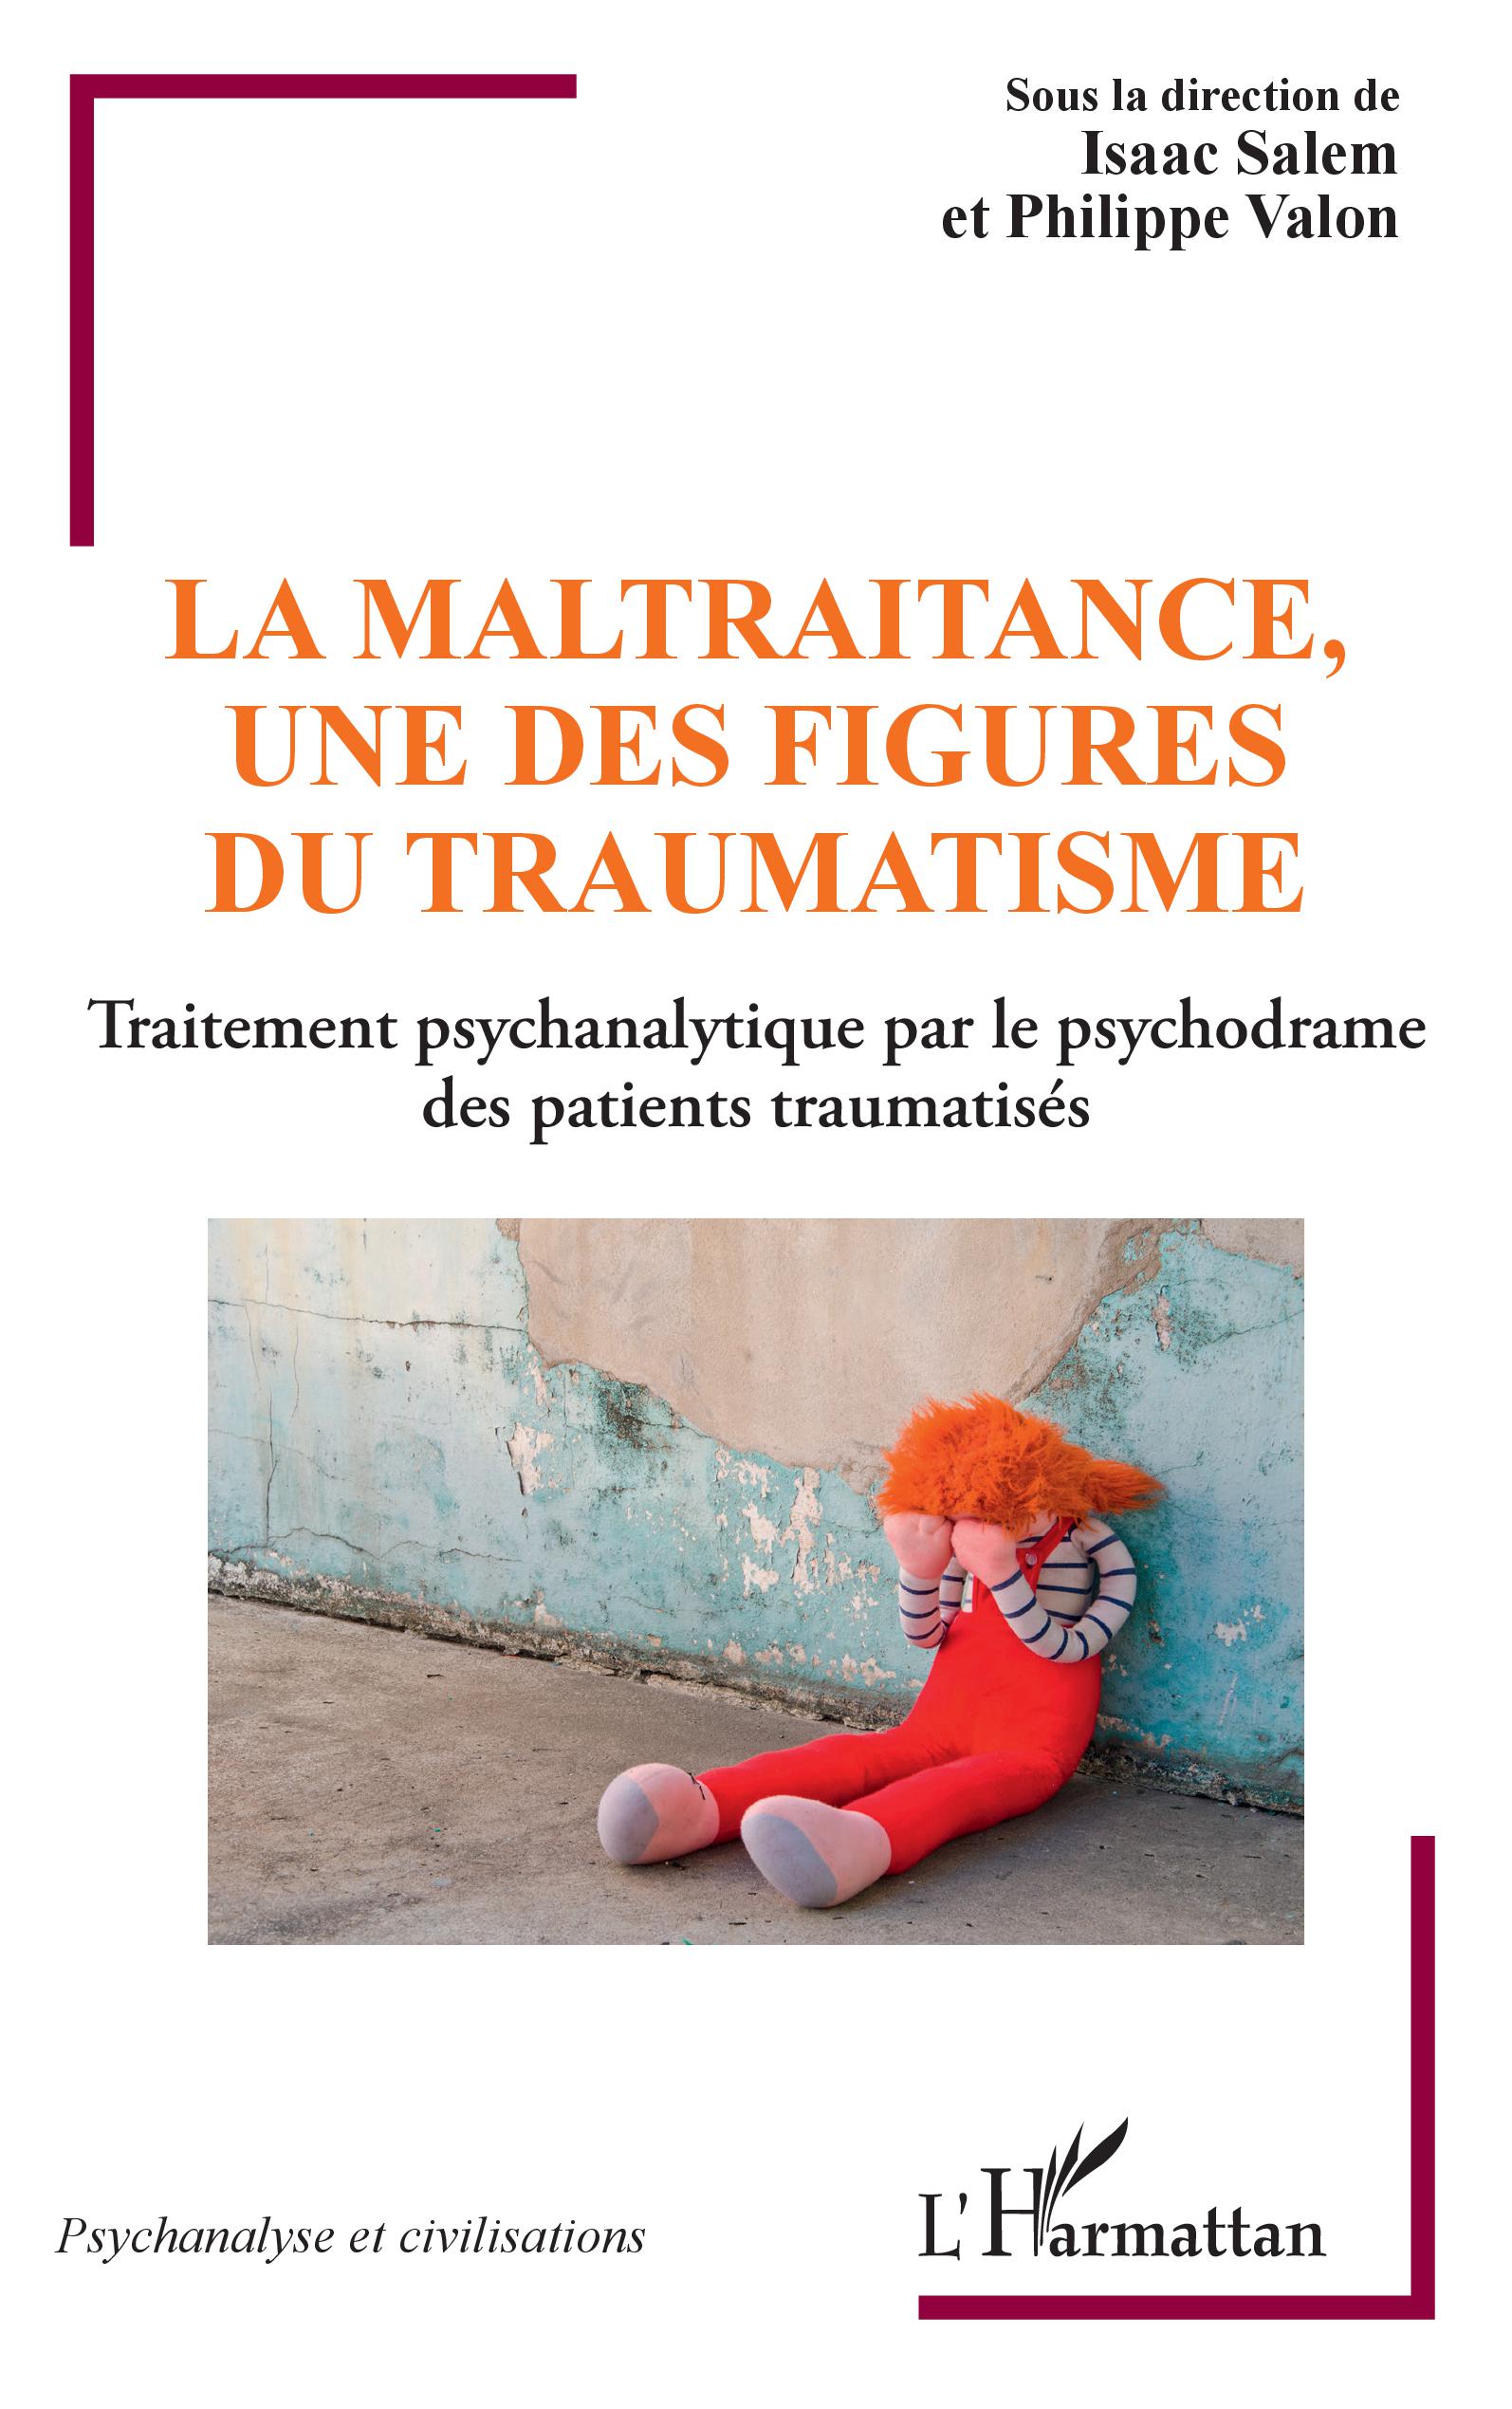 La maltraitance, une des figure du traumatisme - Traitement psychanalytique par le psychodrame des patients traumatisés